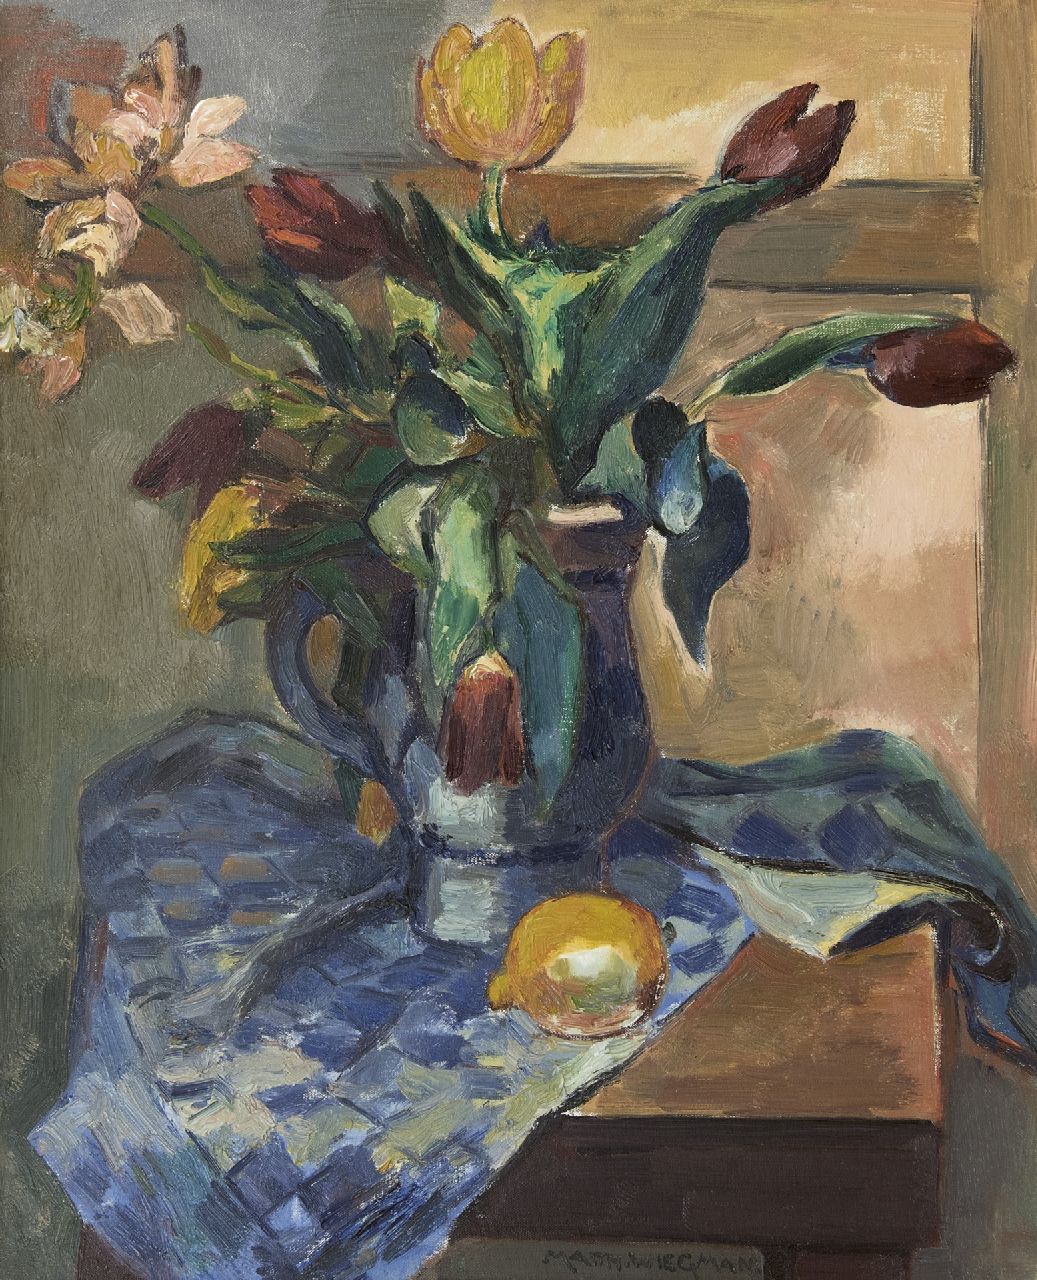 Wiegman M.J.M.  | Mattheus Johannes Marie 'Matthieu' Wiegman | Schilderijen te koop aangeboden | Stilleven met tulpen en een citroen, olieverf op doek 61,4 x 50,1 cm, gesigneerd middenonder